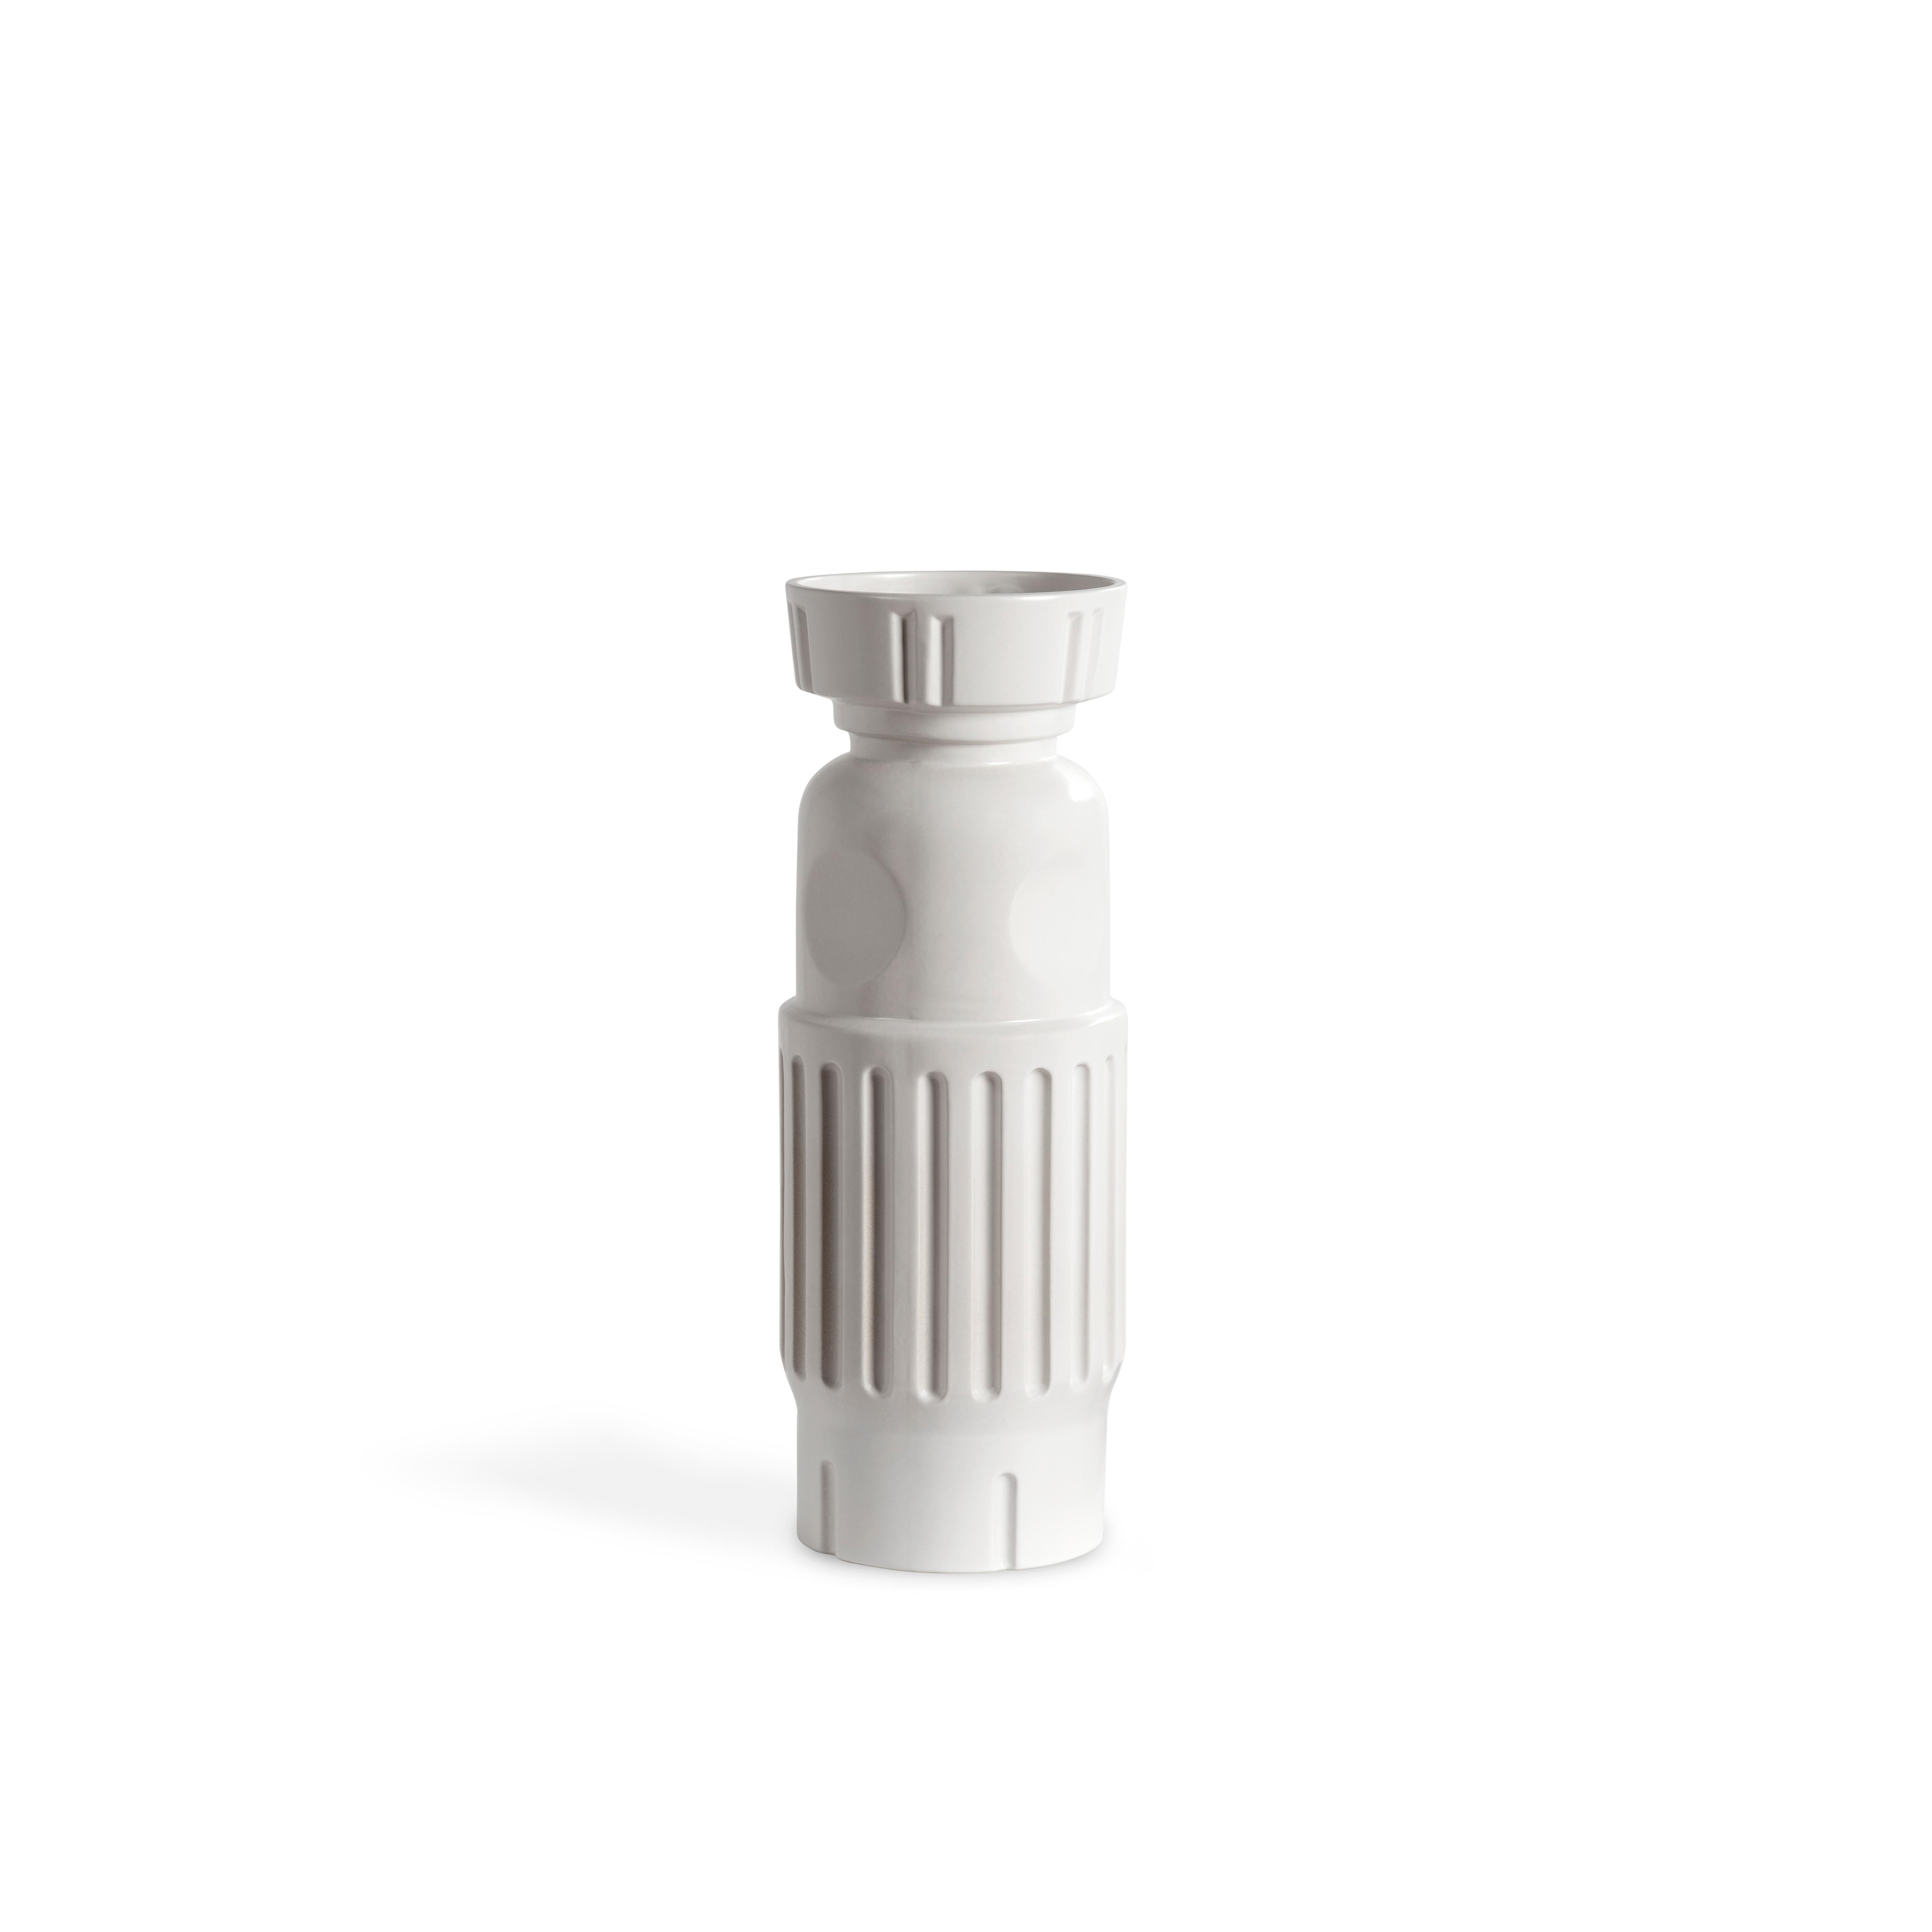 Fg 2 Weiße Vase und Schachtel von Pulpo
Abmessungen: D14 x H40 cm
MATERIALIEN: Keramik

Auch in verschiedenen Farben erhältlich. Bitte kontaktieren Sie uns.

Die keramischen Objekte der Serie fg, die sowohl futuristisch als auch ein altes Relikt